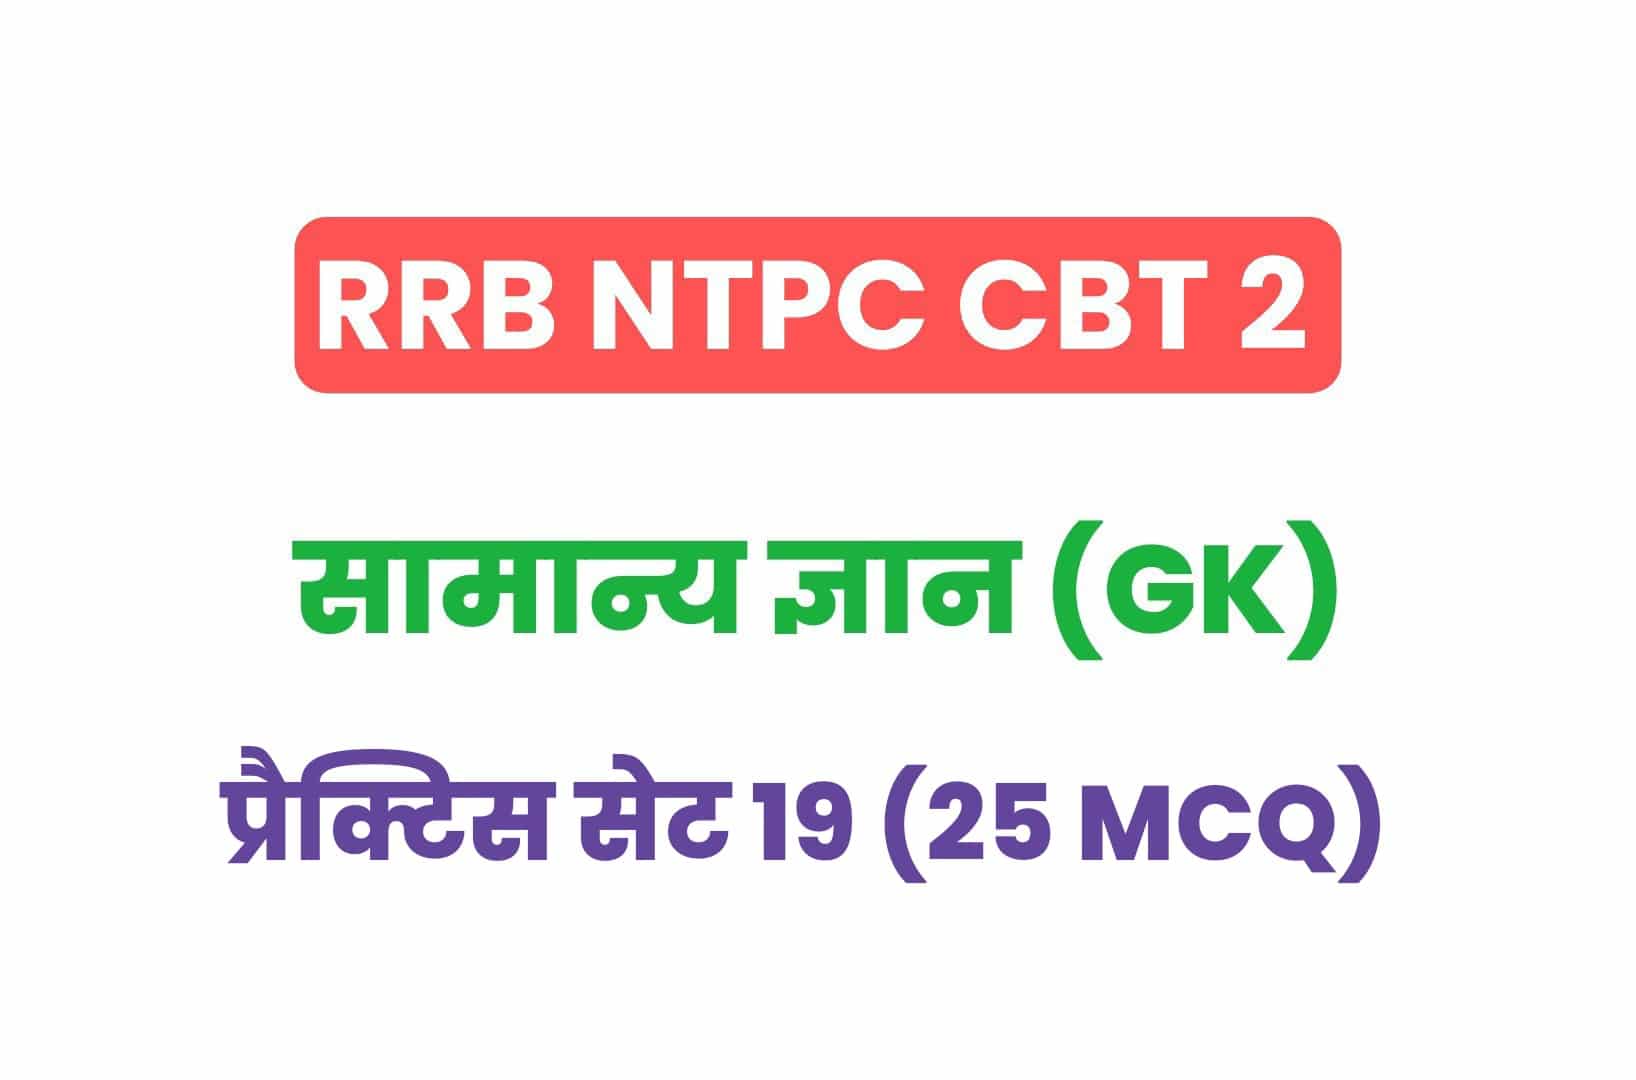 RRB NTPC CBT 2 GK प्रैक्टिस सेट 19: परीक्षा में पूछे गये सामान्य ज्ञान के महत्वपूर्ण प्रश्न, जरूर देखें